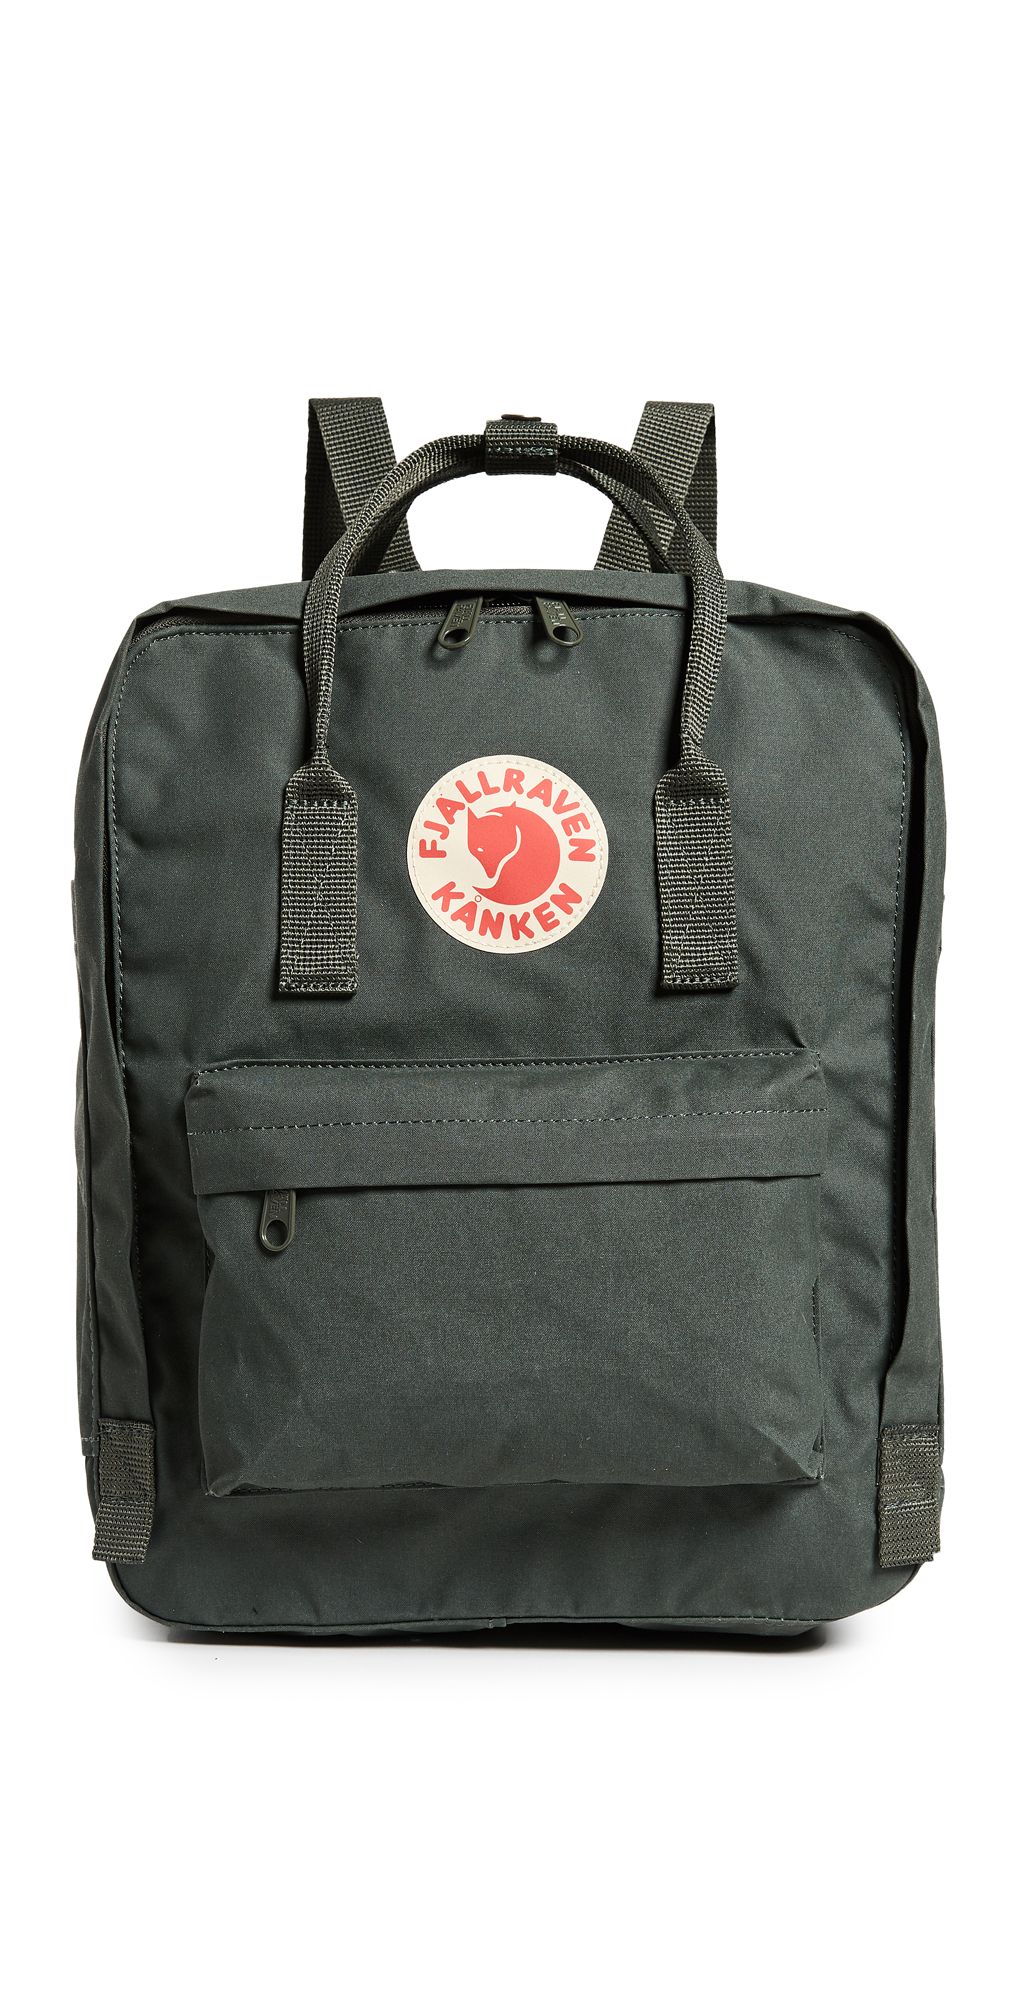 Kanken Backpack | Shopbop